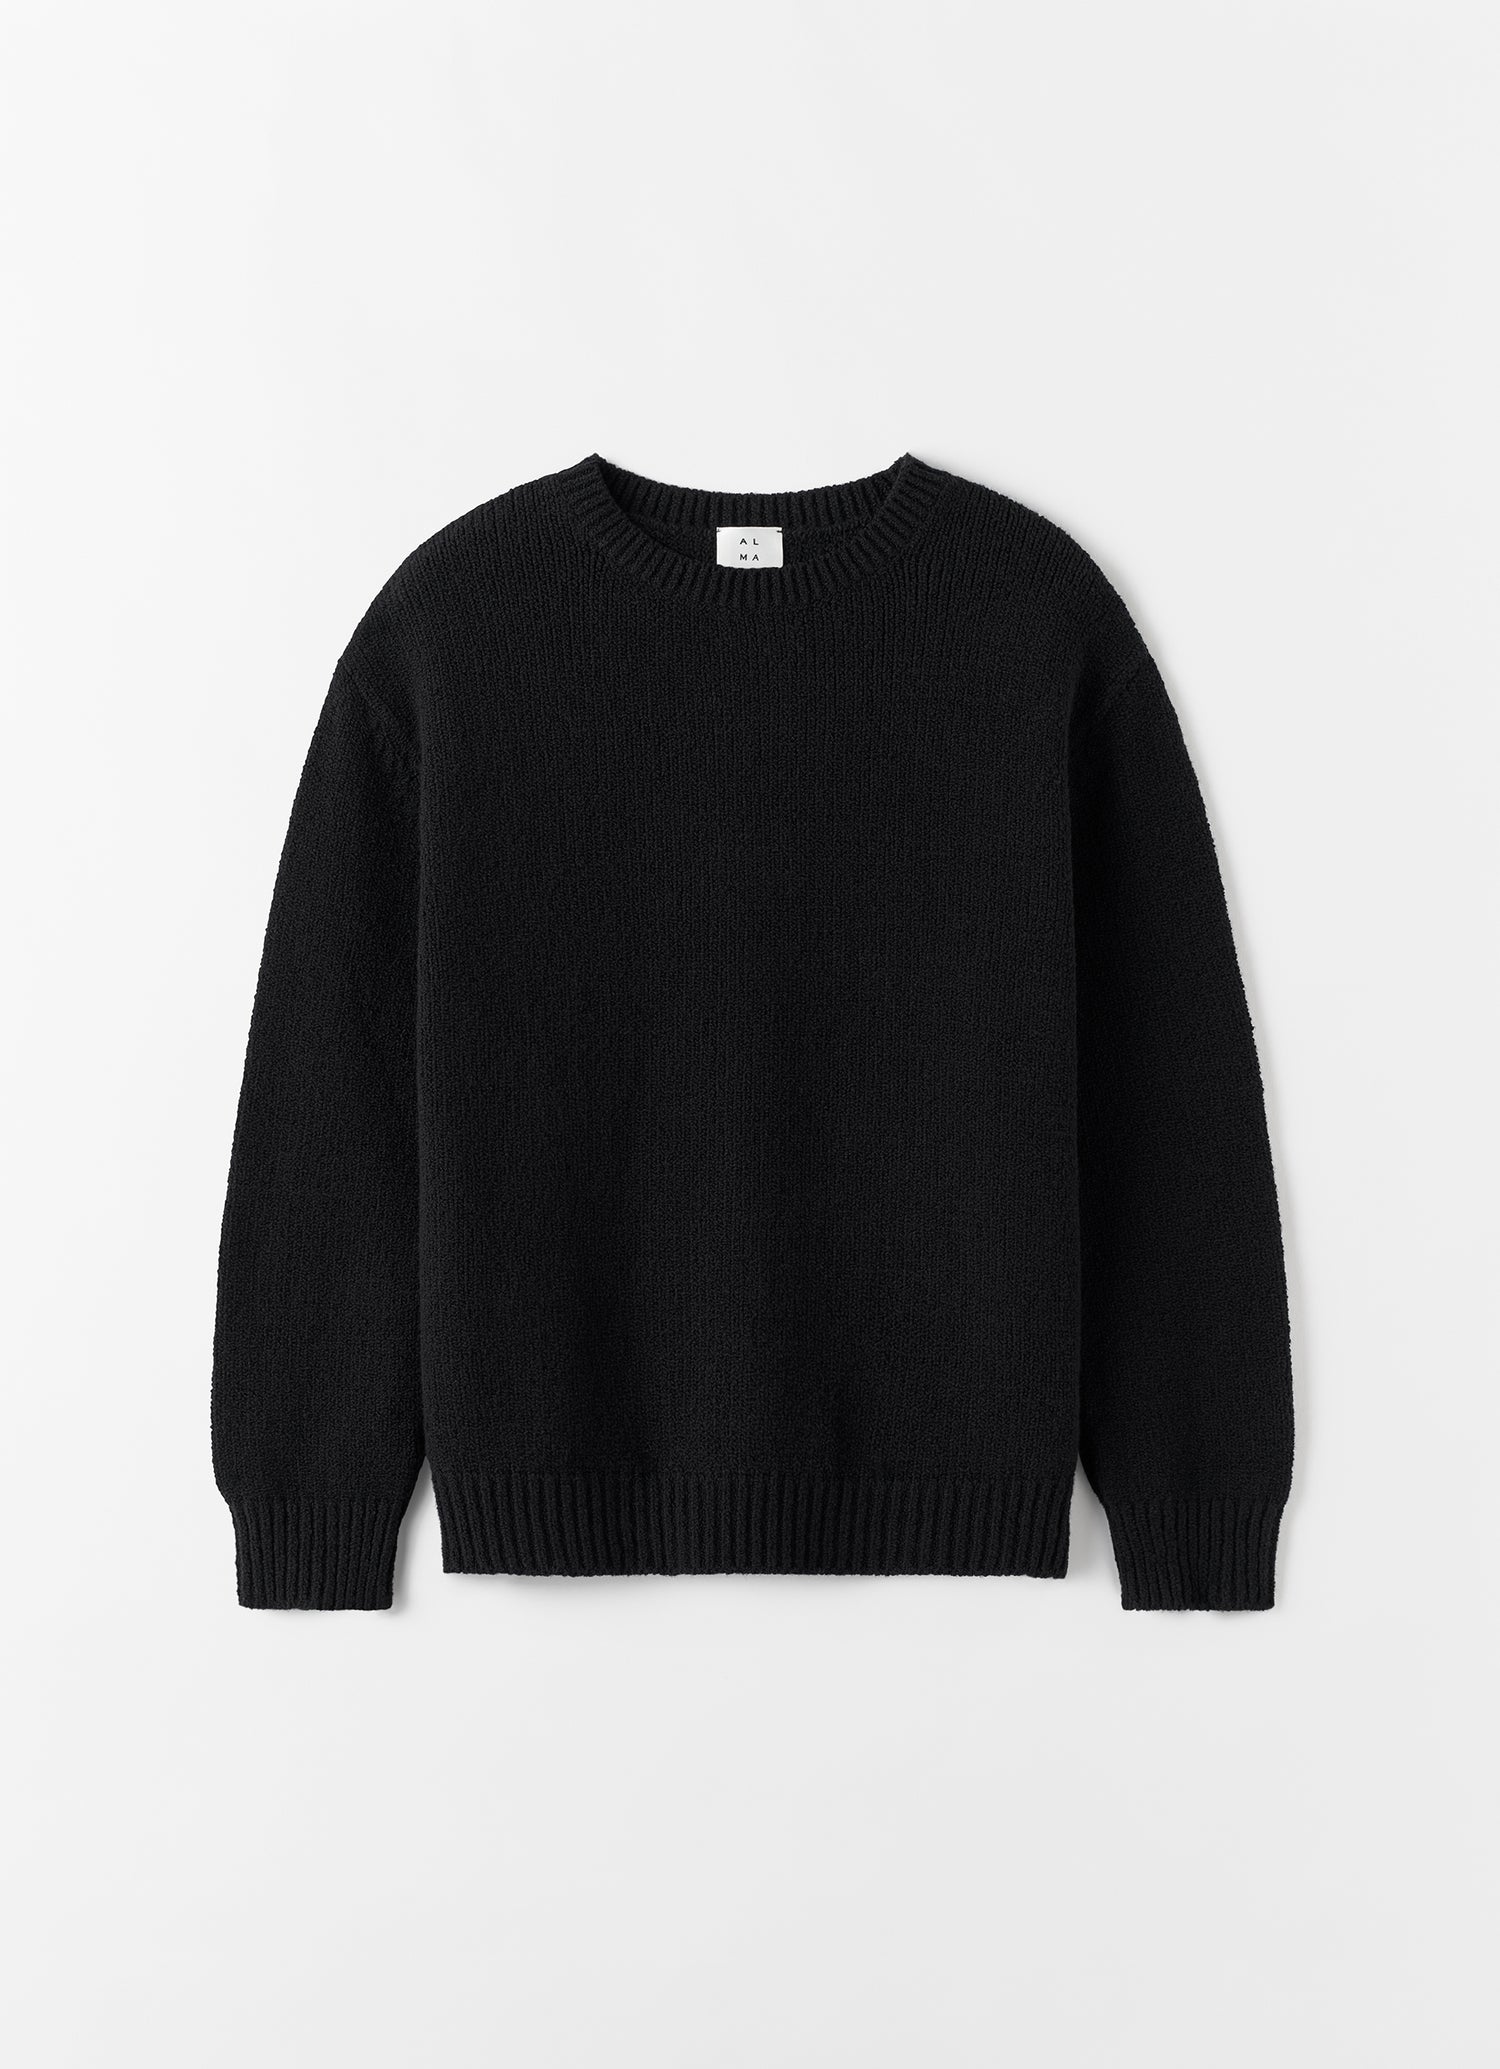 Flor Crewneck Sweater, black